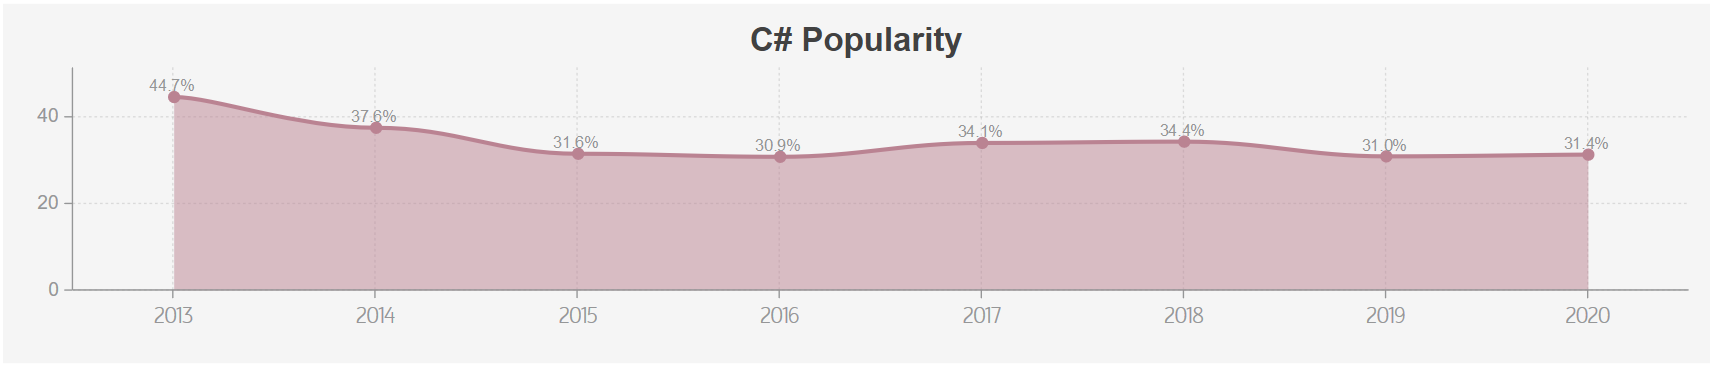 c# popularity